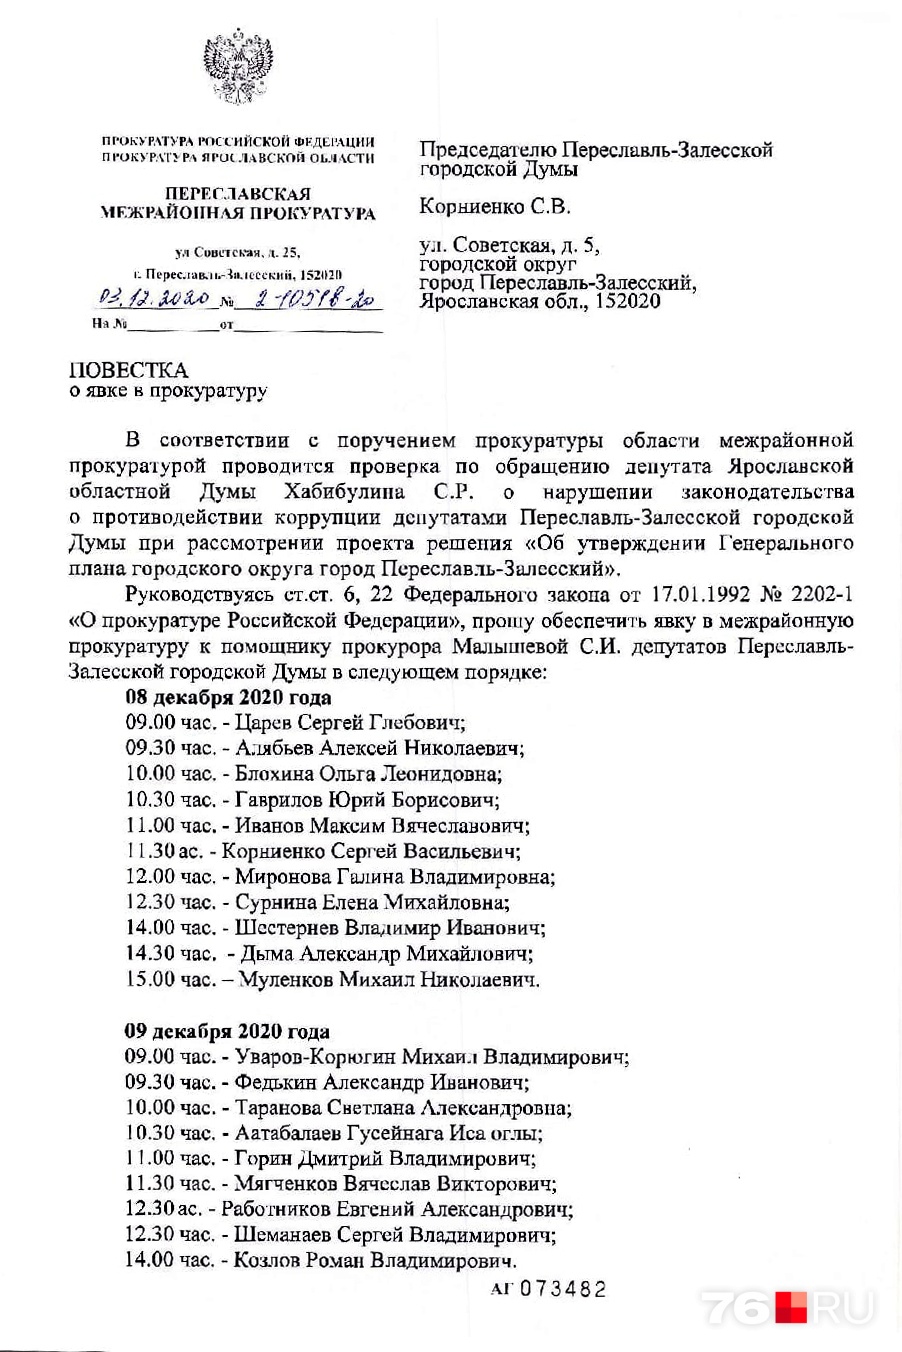 Всех переславских депутатов после скандала вызвали в прокуратуру